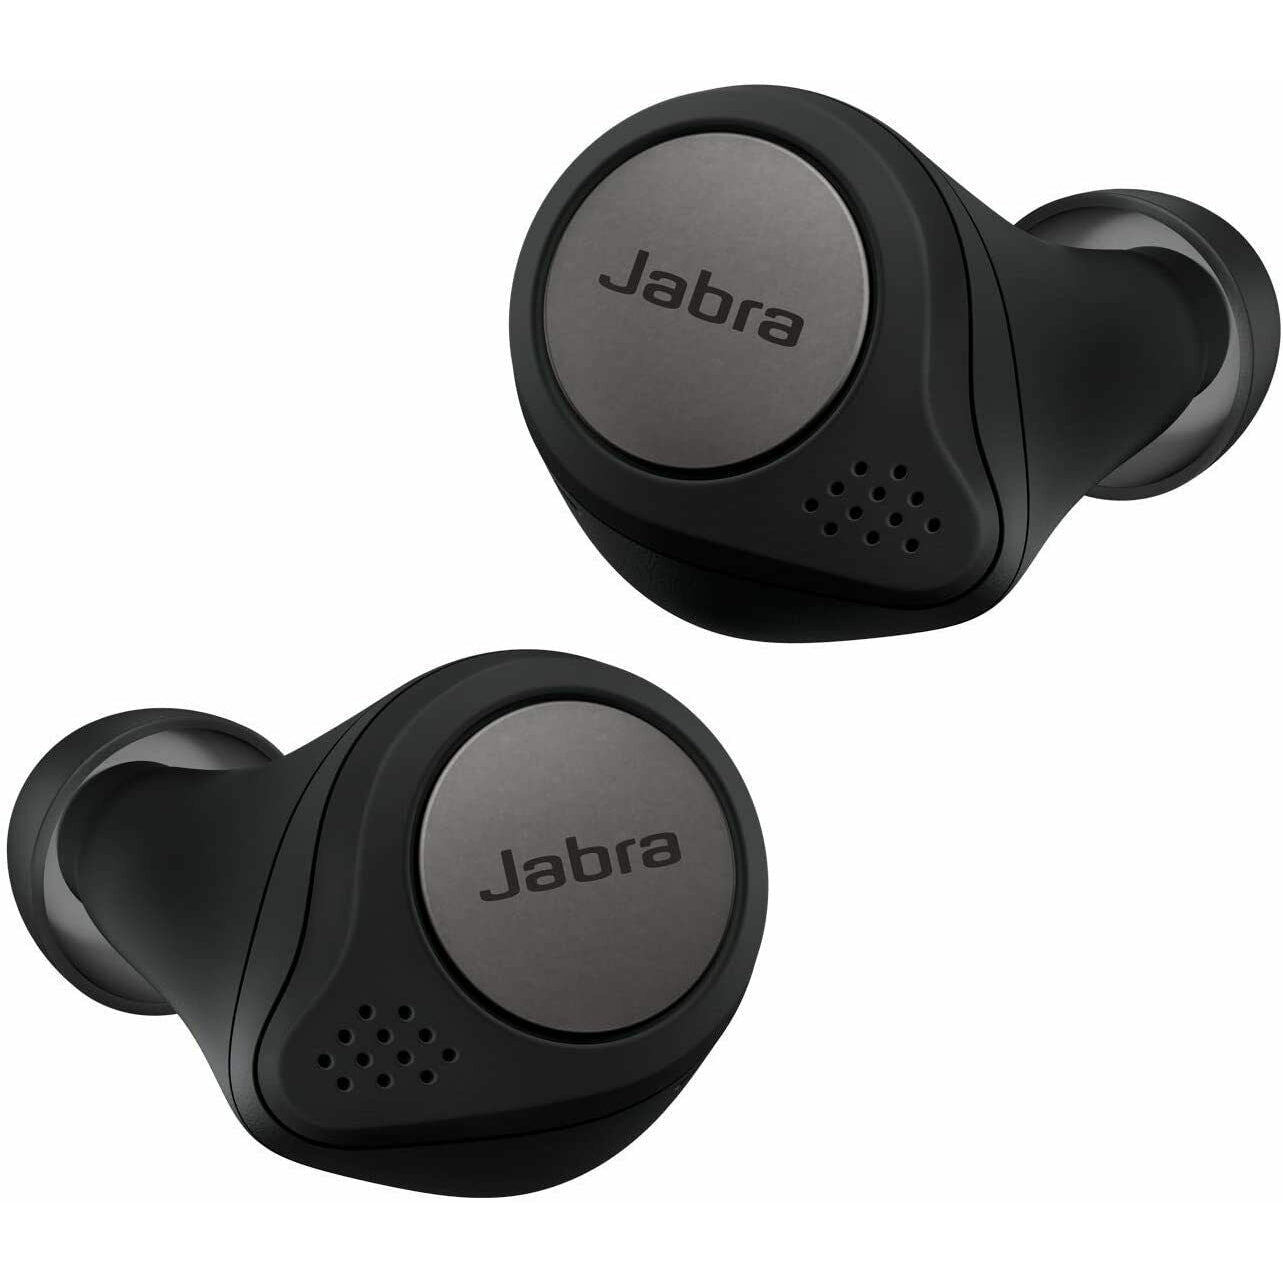 Jabra Elite Active 75T Wireless Bluetooth Earphones - Black - Refurbished Excellent